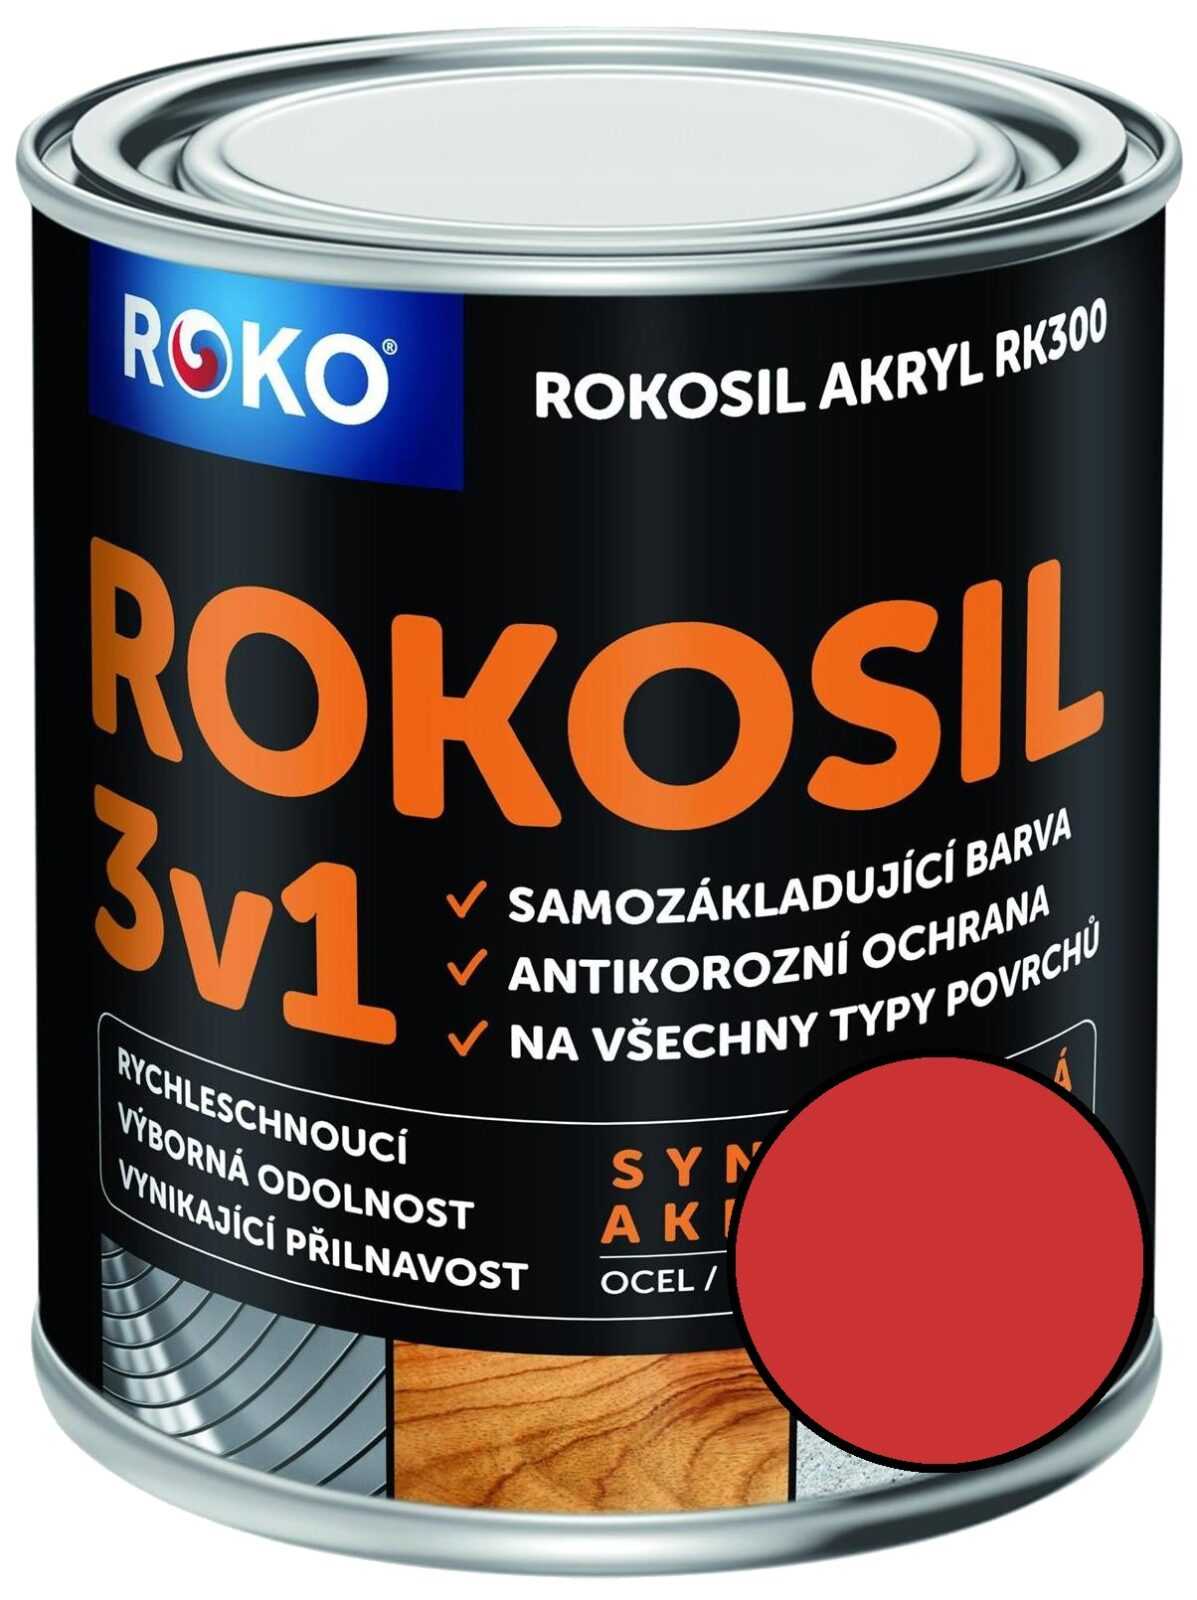 Barva samozákladující Rokosil akryl 3v1 RK 300 červ. rum.  0